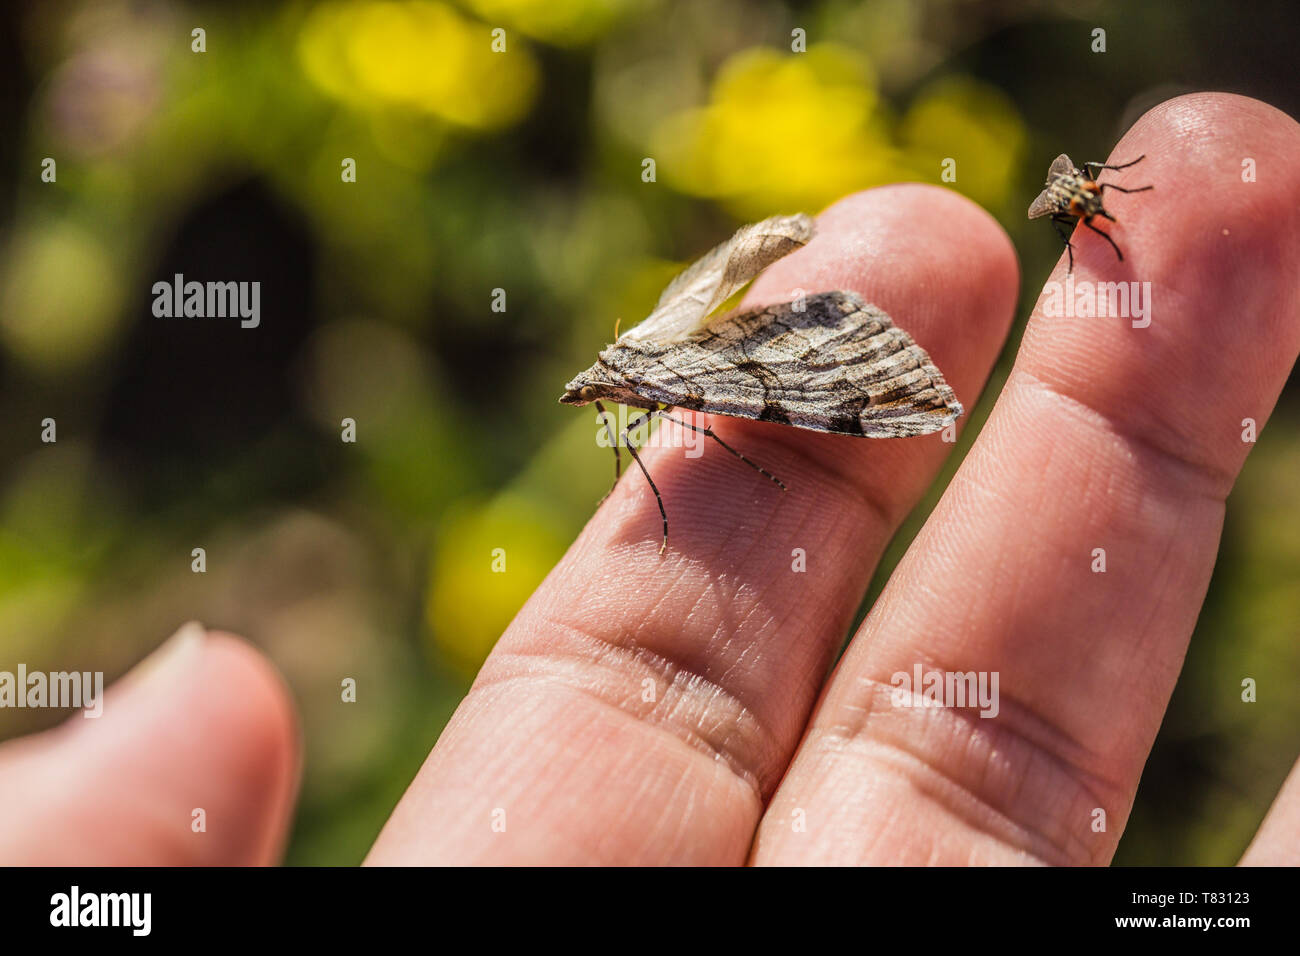 Close up image de petit insecte gris et brun, un aigu-bar d'amphibien de la famille des Geometridés, et une mouche assis sur un doigt. Journée ensoleillée du printemps dans la nature. Banque D'Images